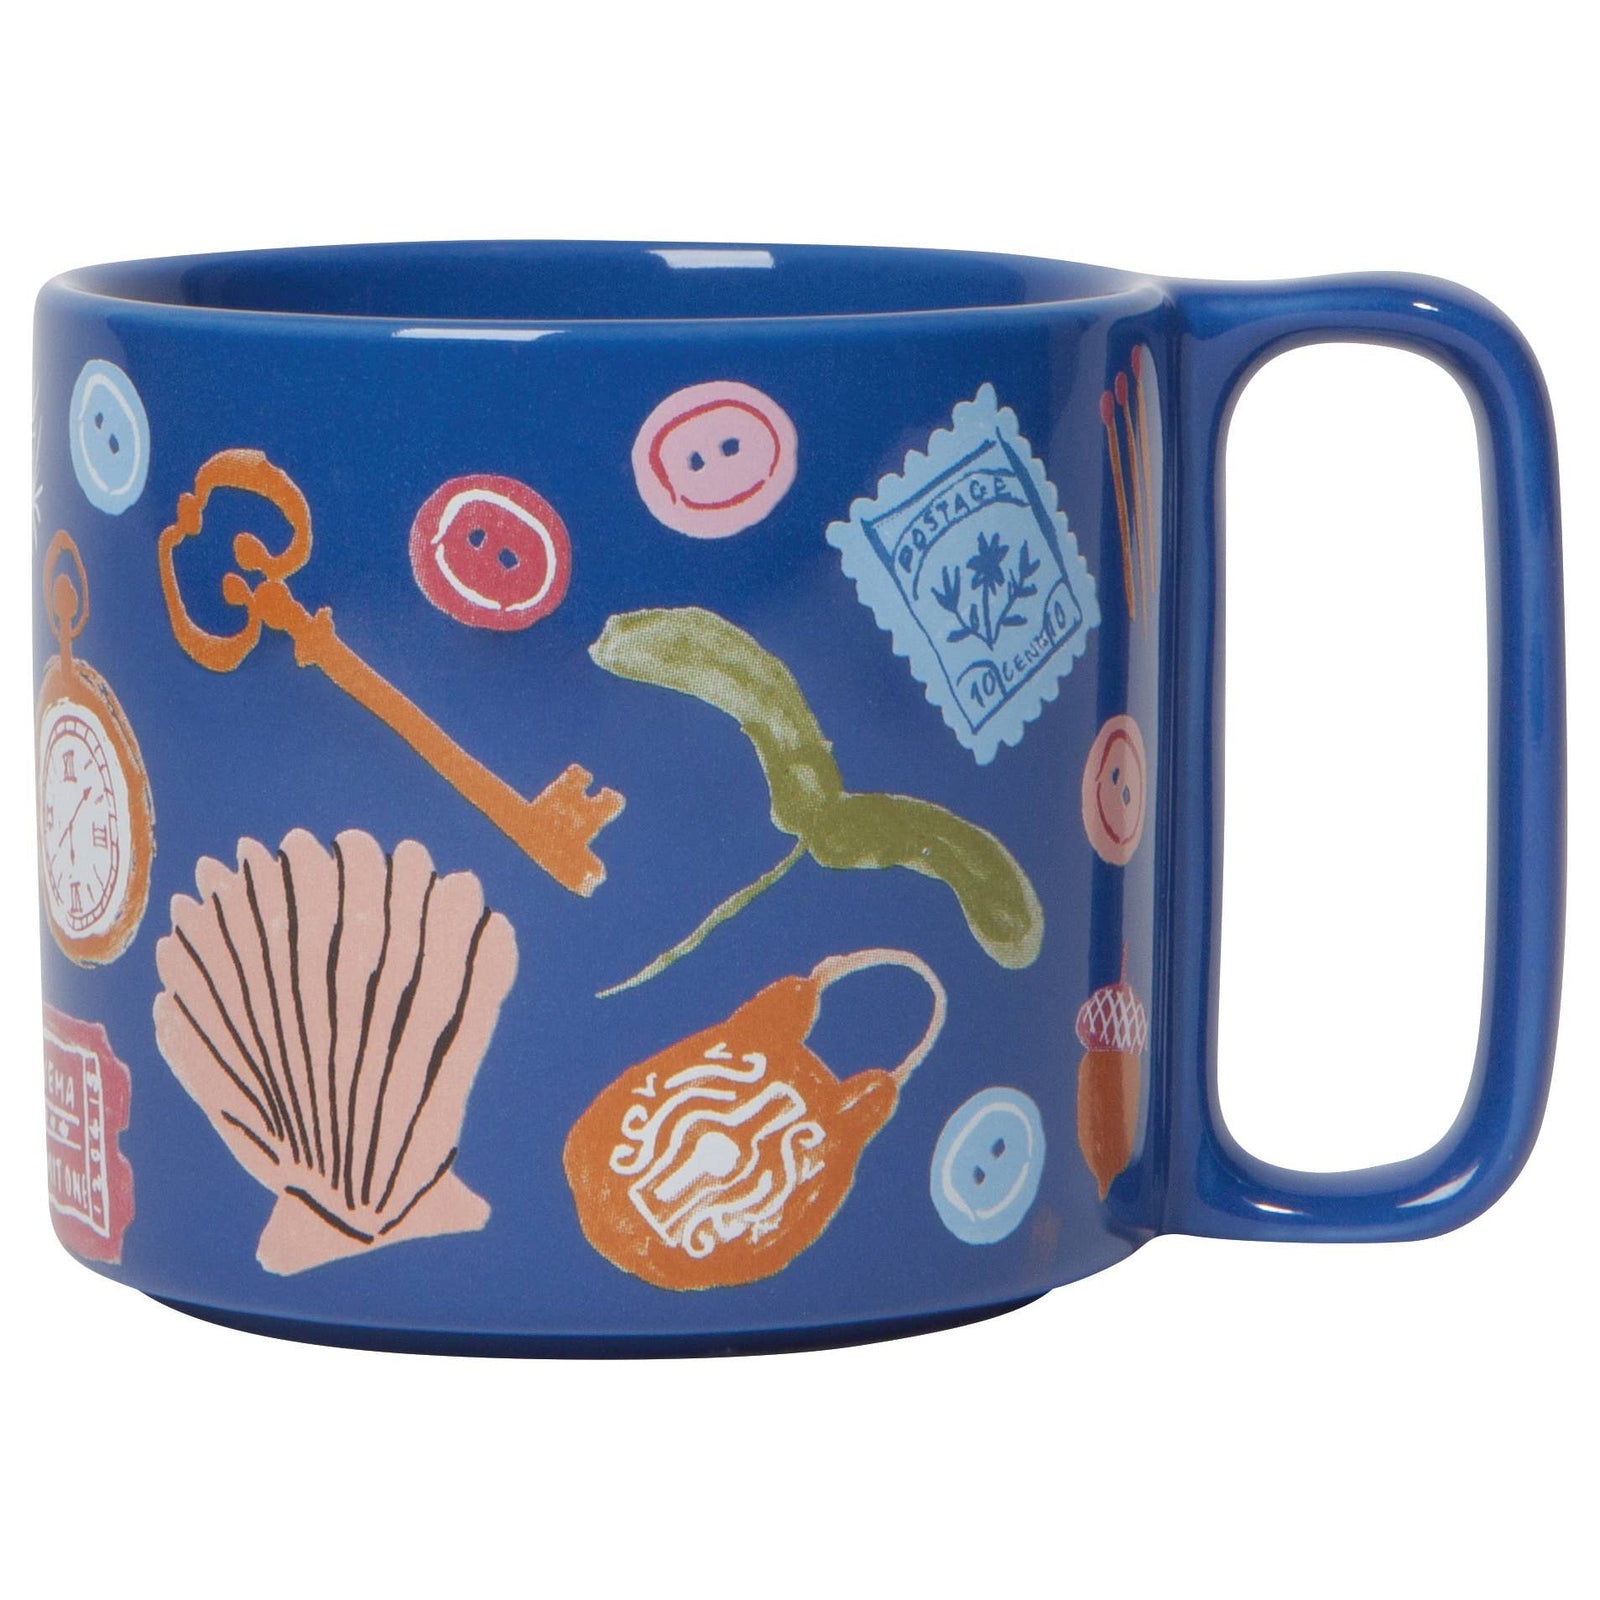 Finders Keepers Ceramic Studio Midi Mug | Cobalt Blue Coffee Tea Cup | 11 oz